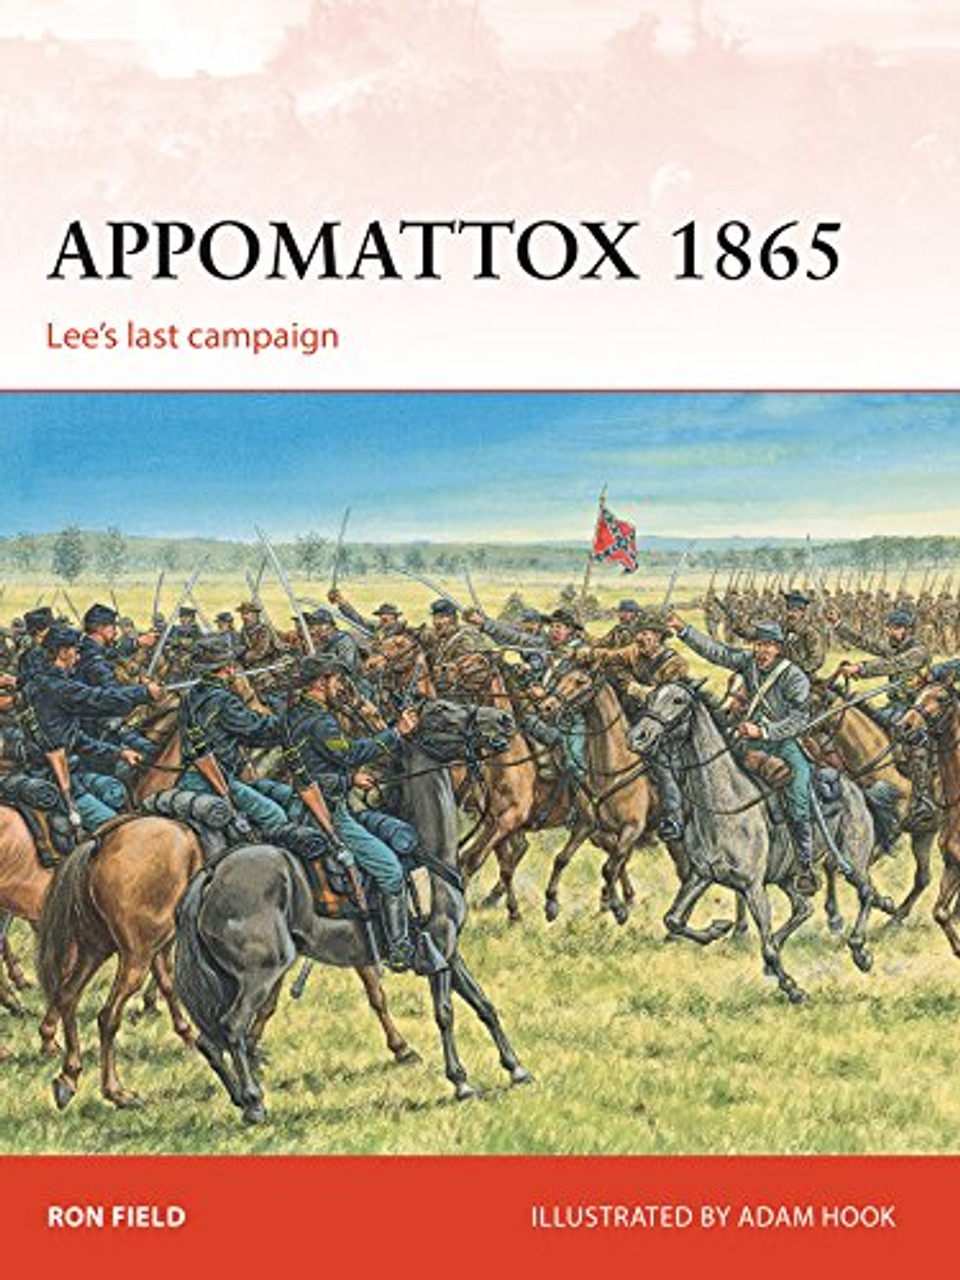 CAM279 - Appomattox 1865: Lee's Last Campaign